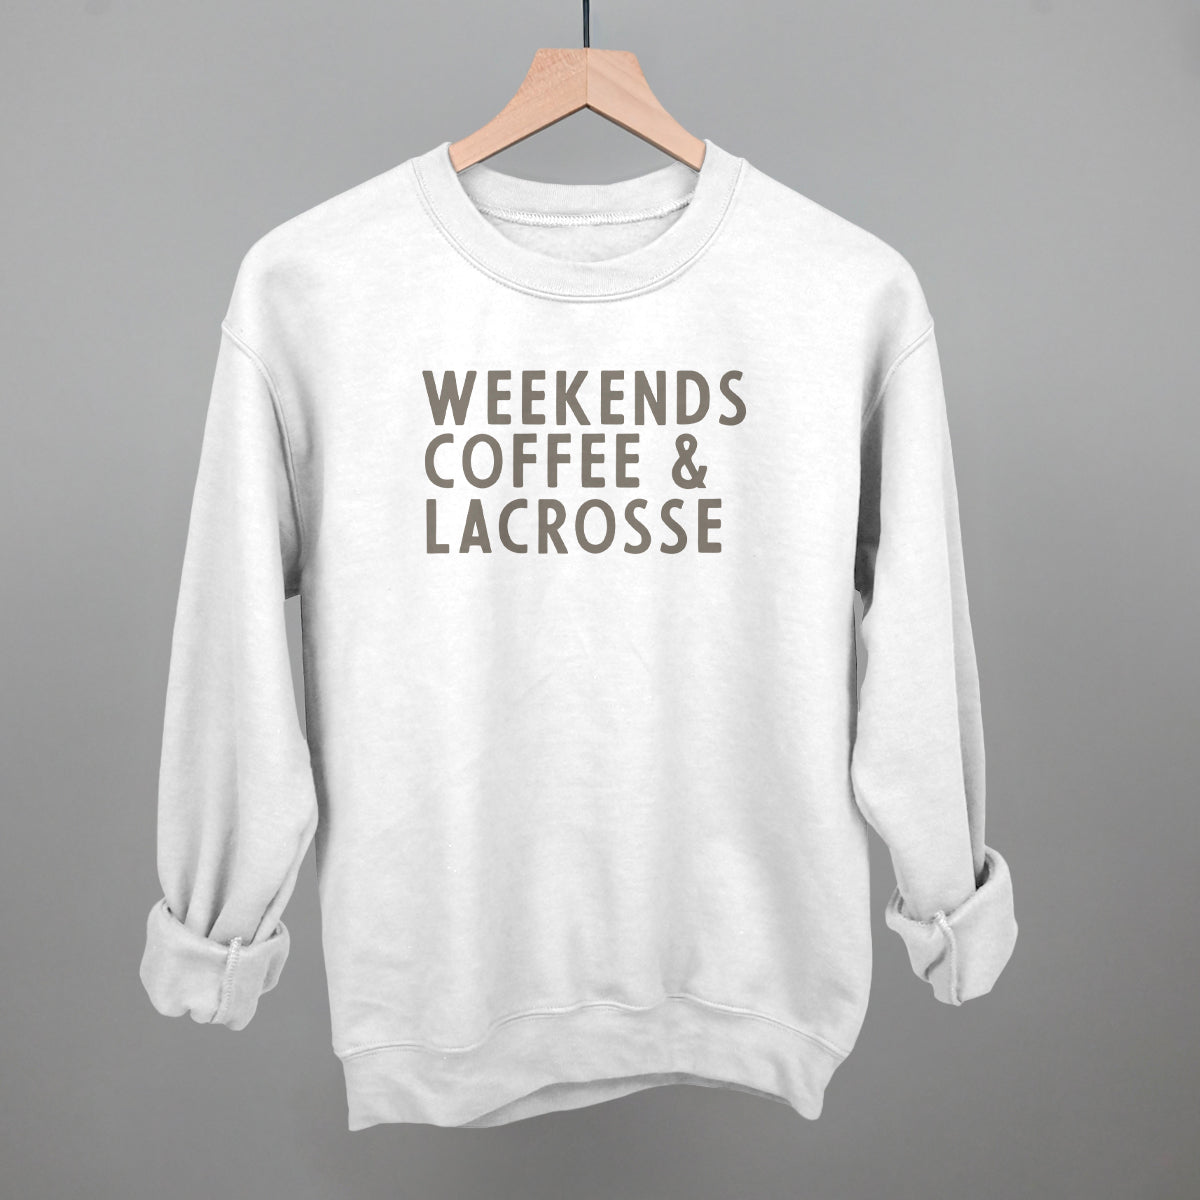 Weekends Coffee & Lacrosse